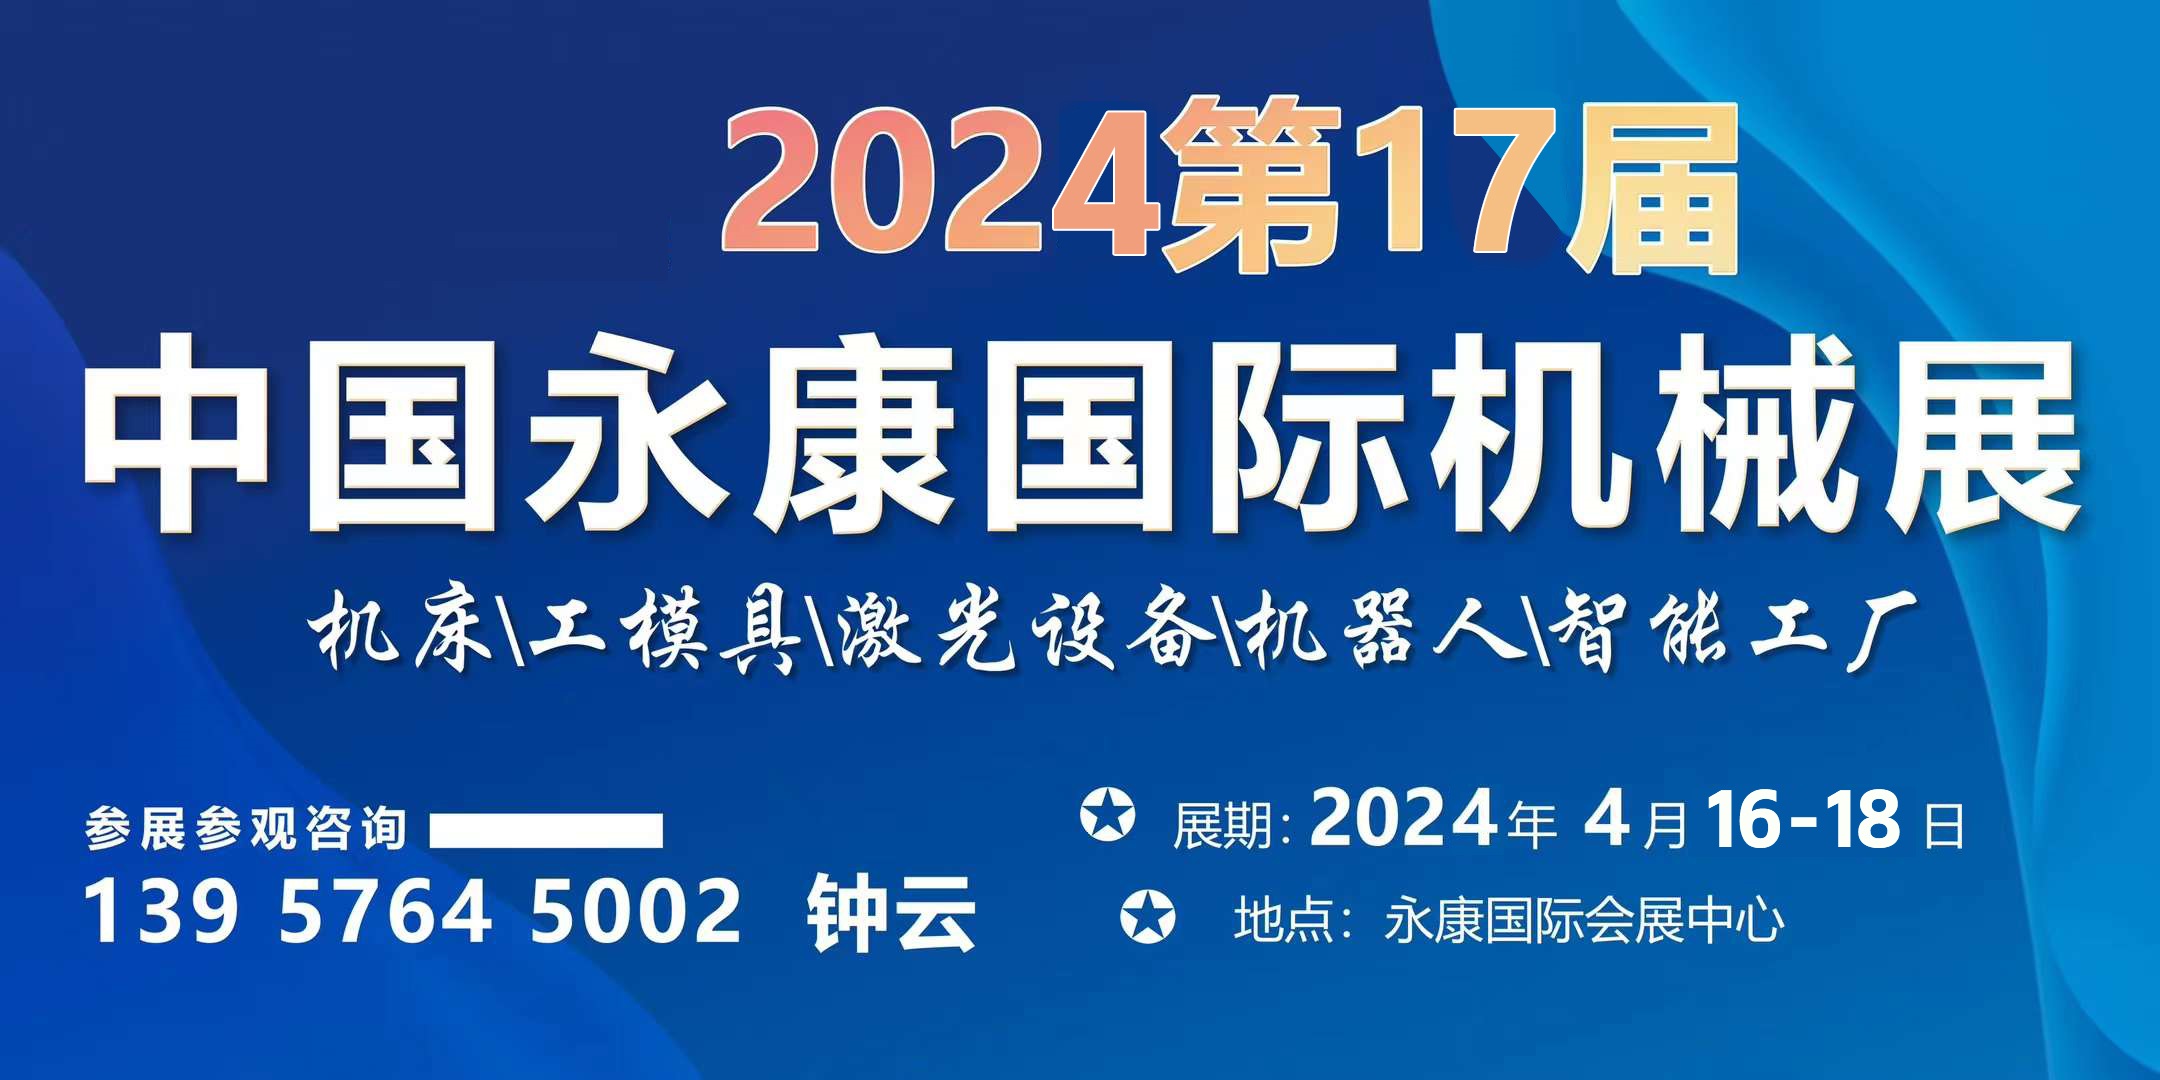 2024第17届永康机床装备博览会